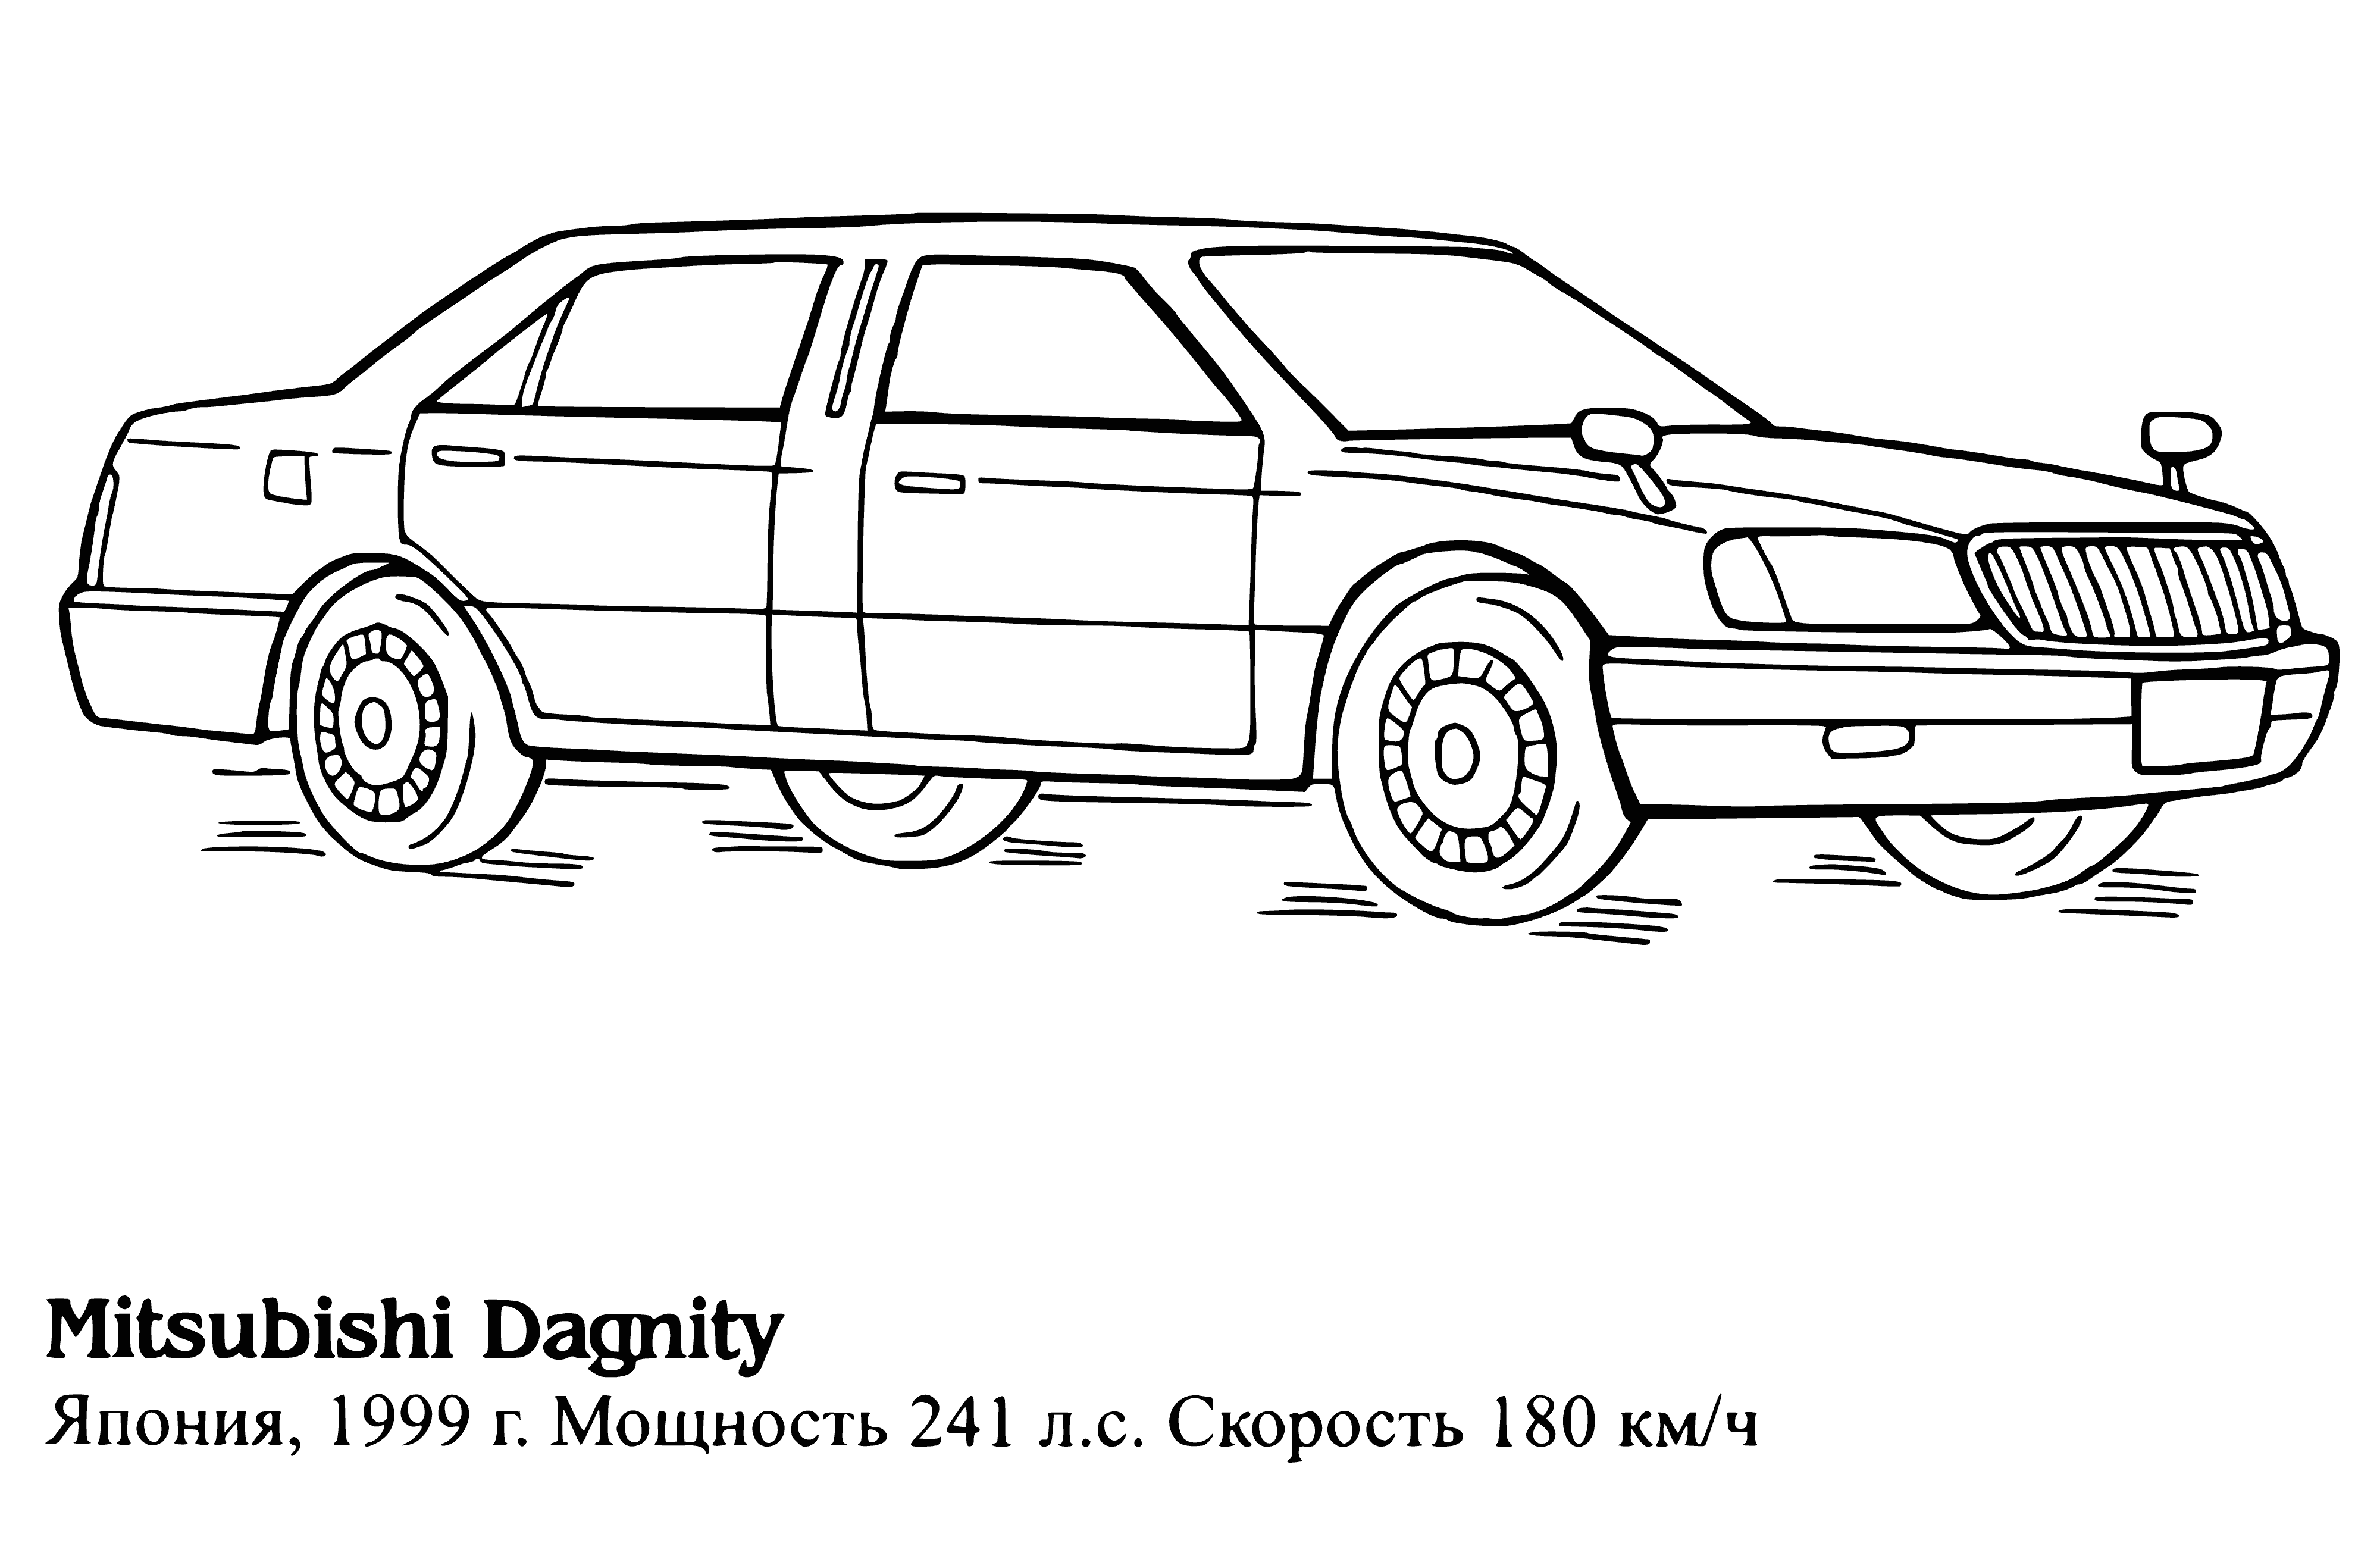 Mitsubishi Dagnity coloring page